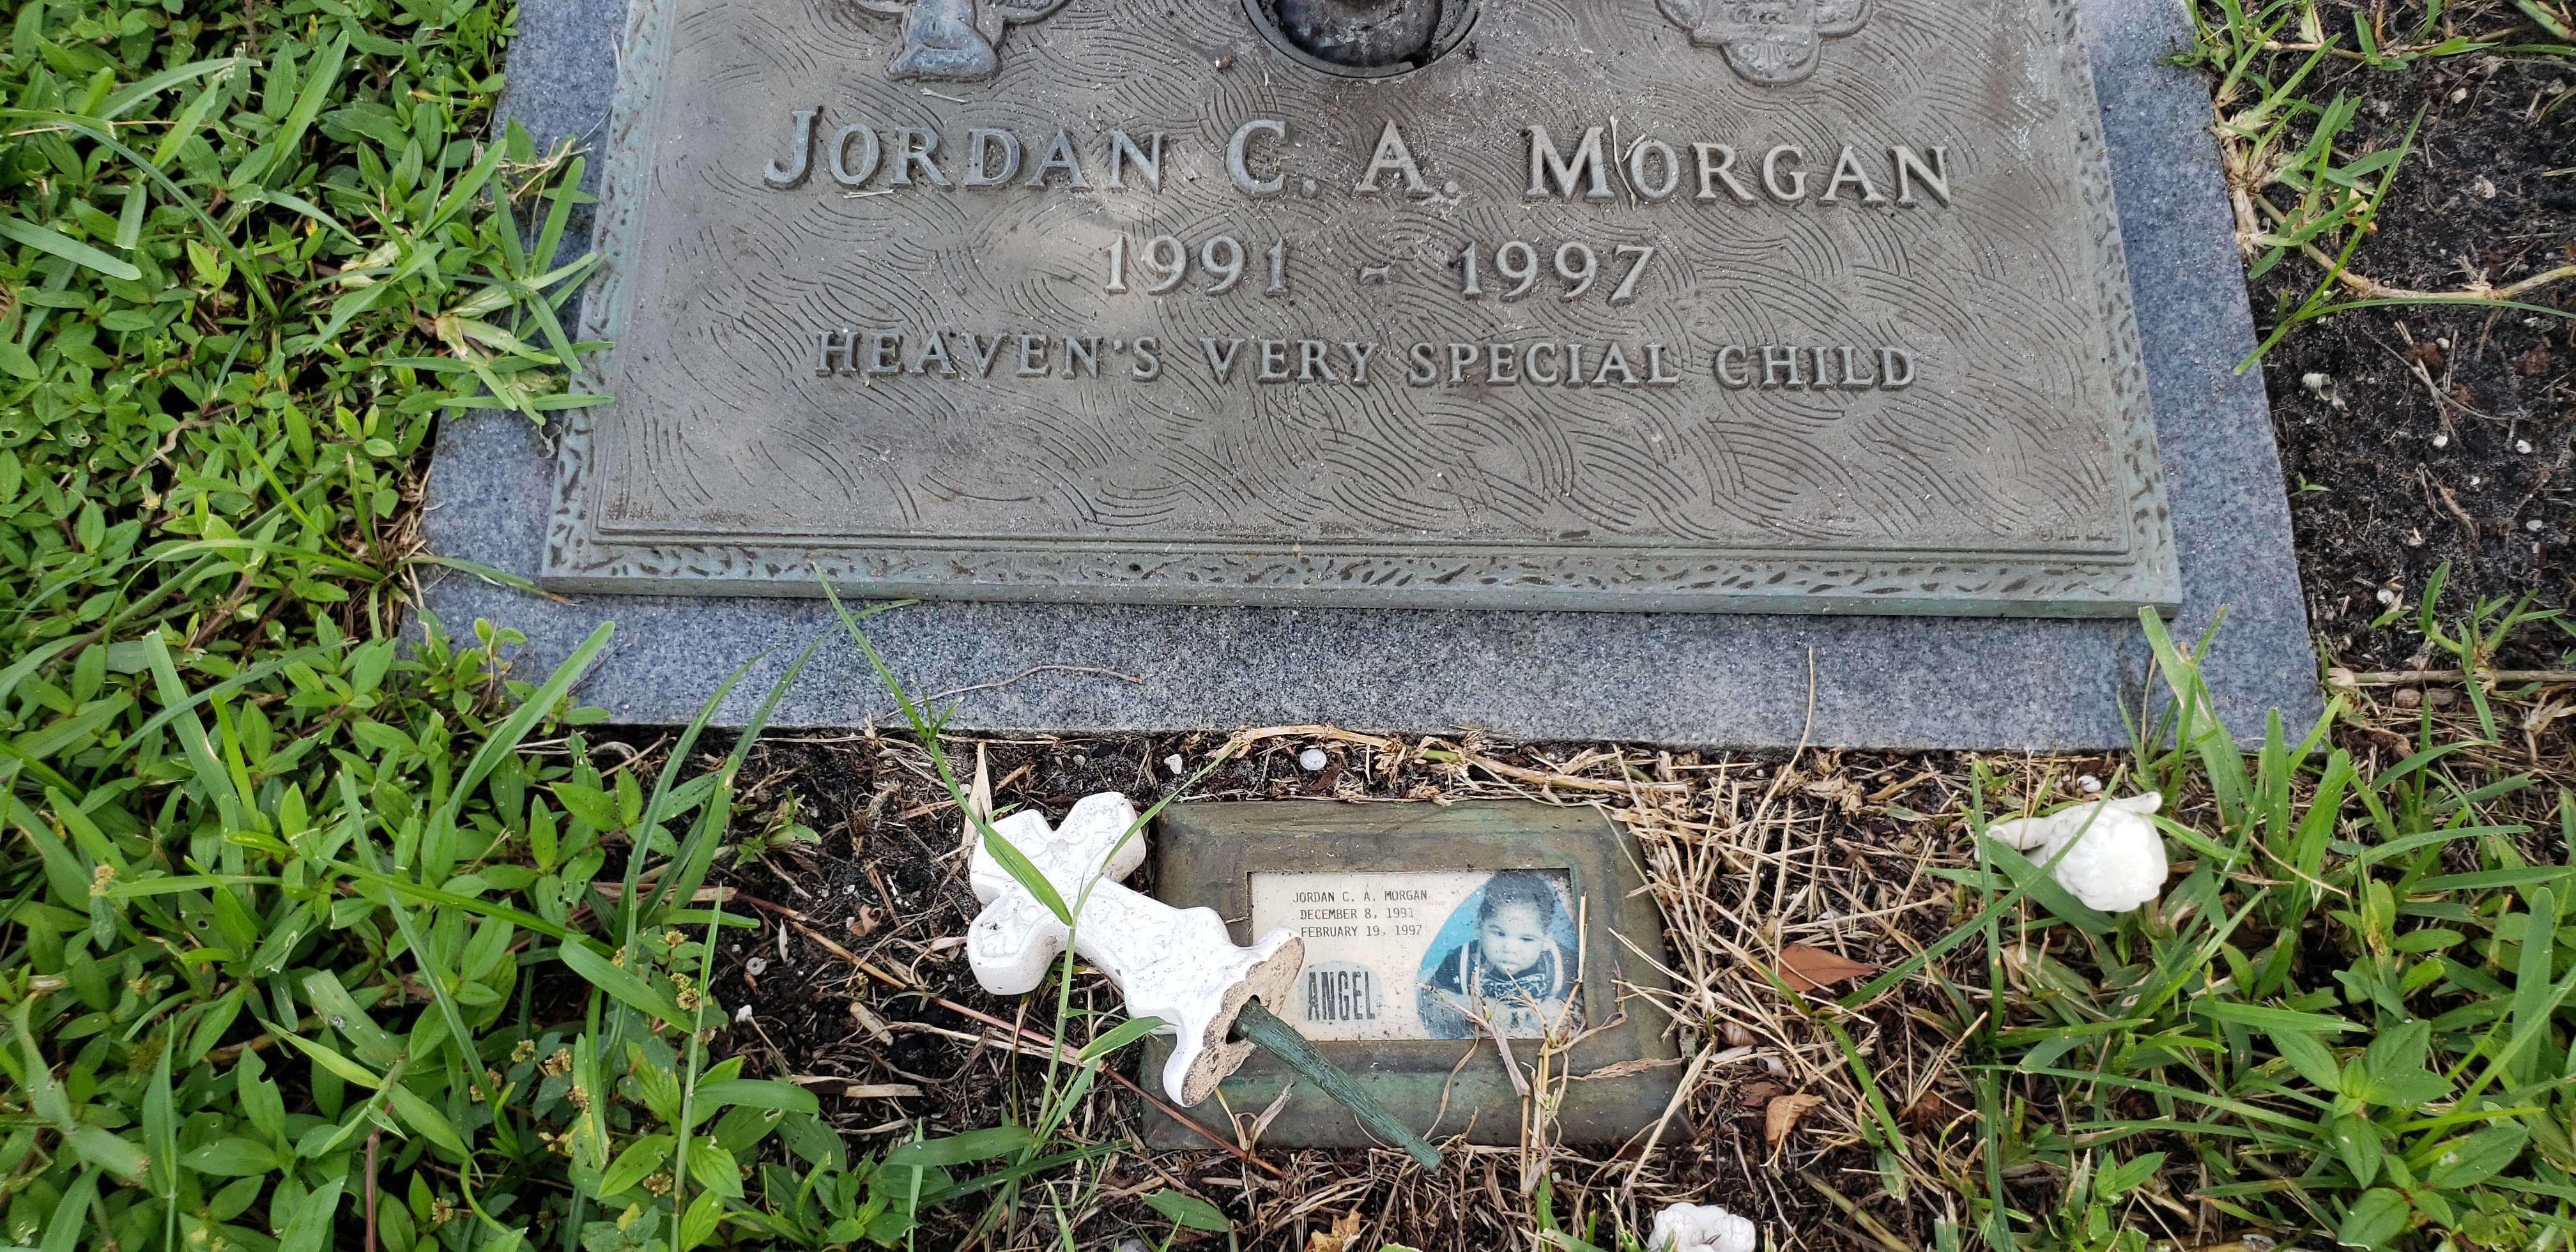 Jordan C A Morgan